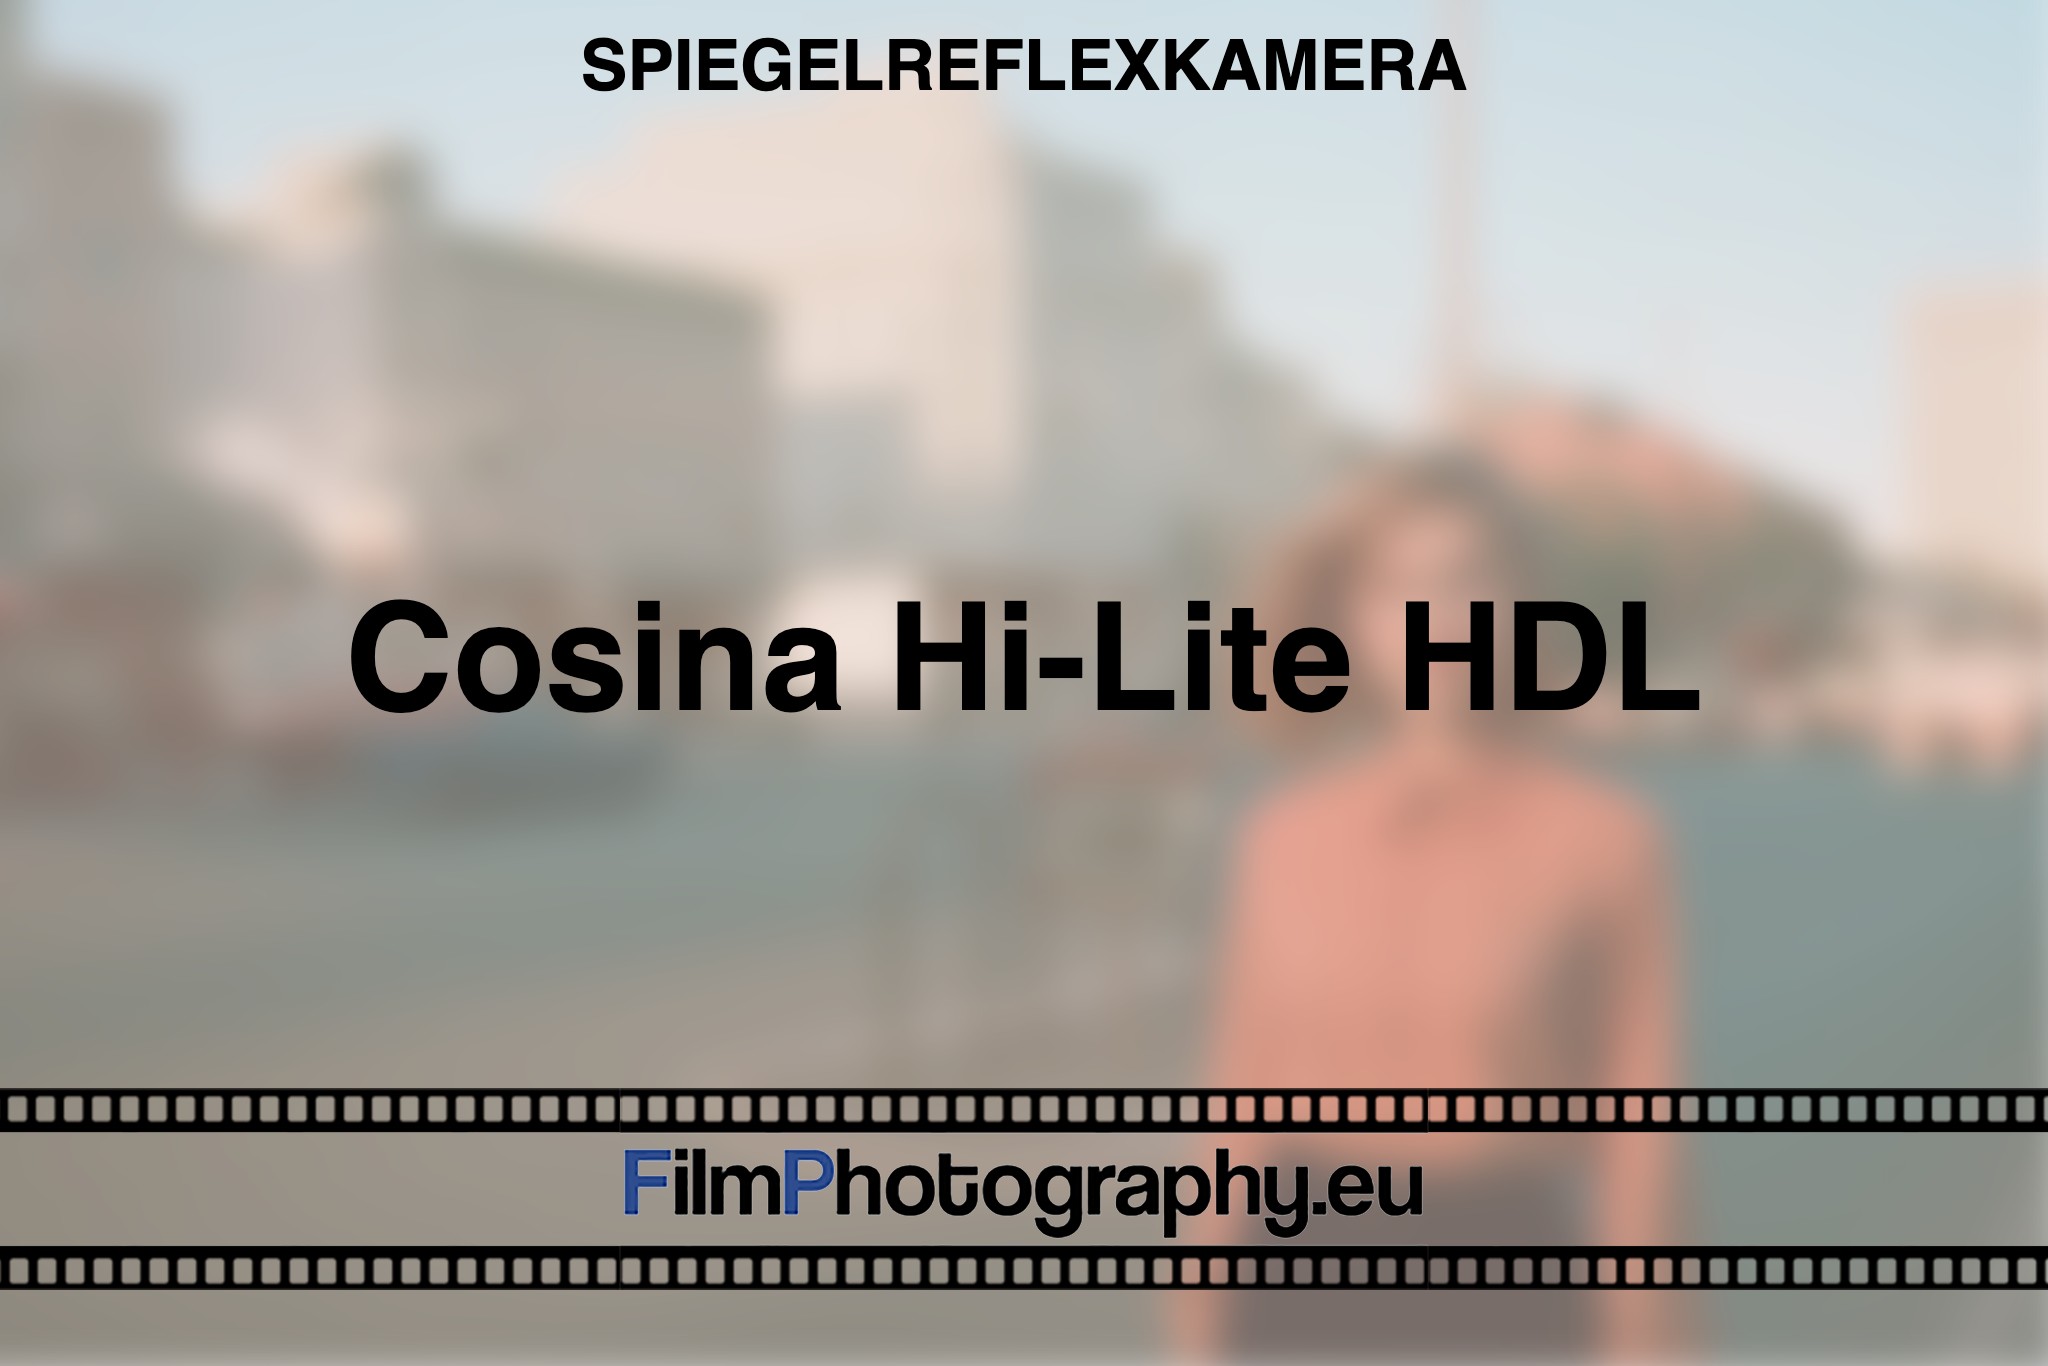 cosina-hi-lite-hdl-spiegelreflexkamera-bnv